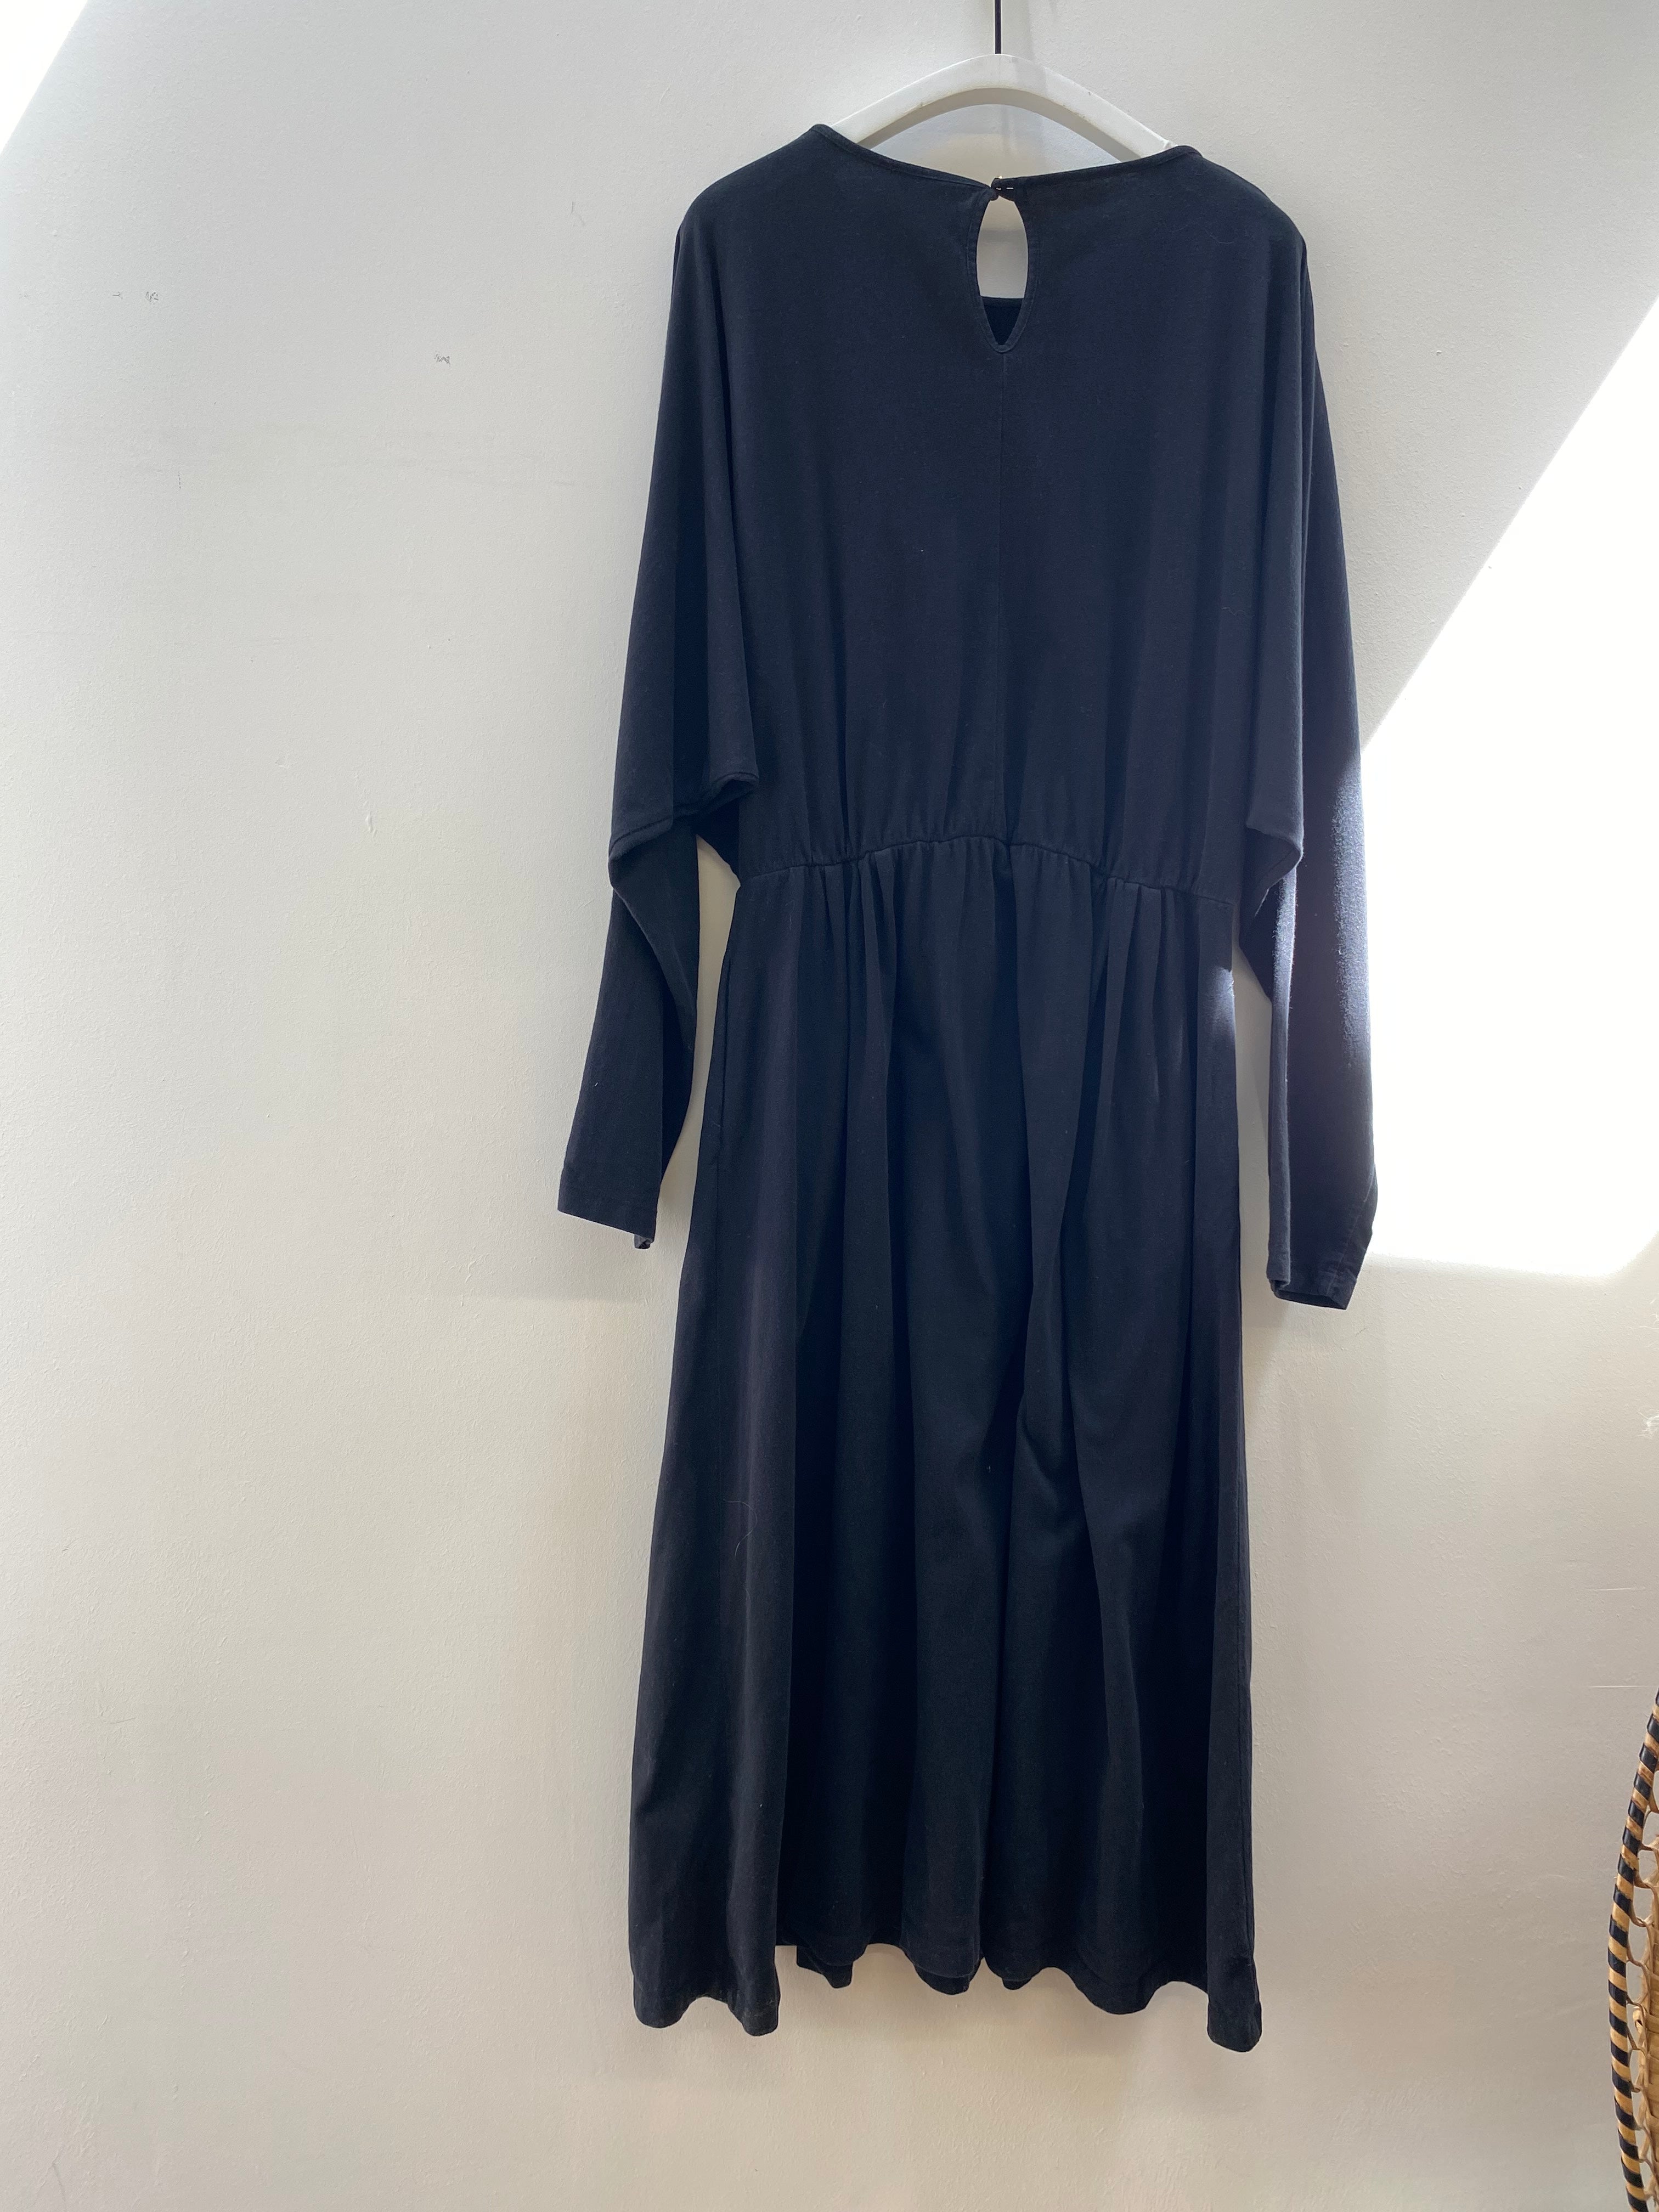 Talita Dress in Black Size S